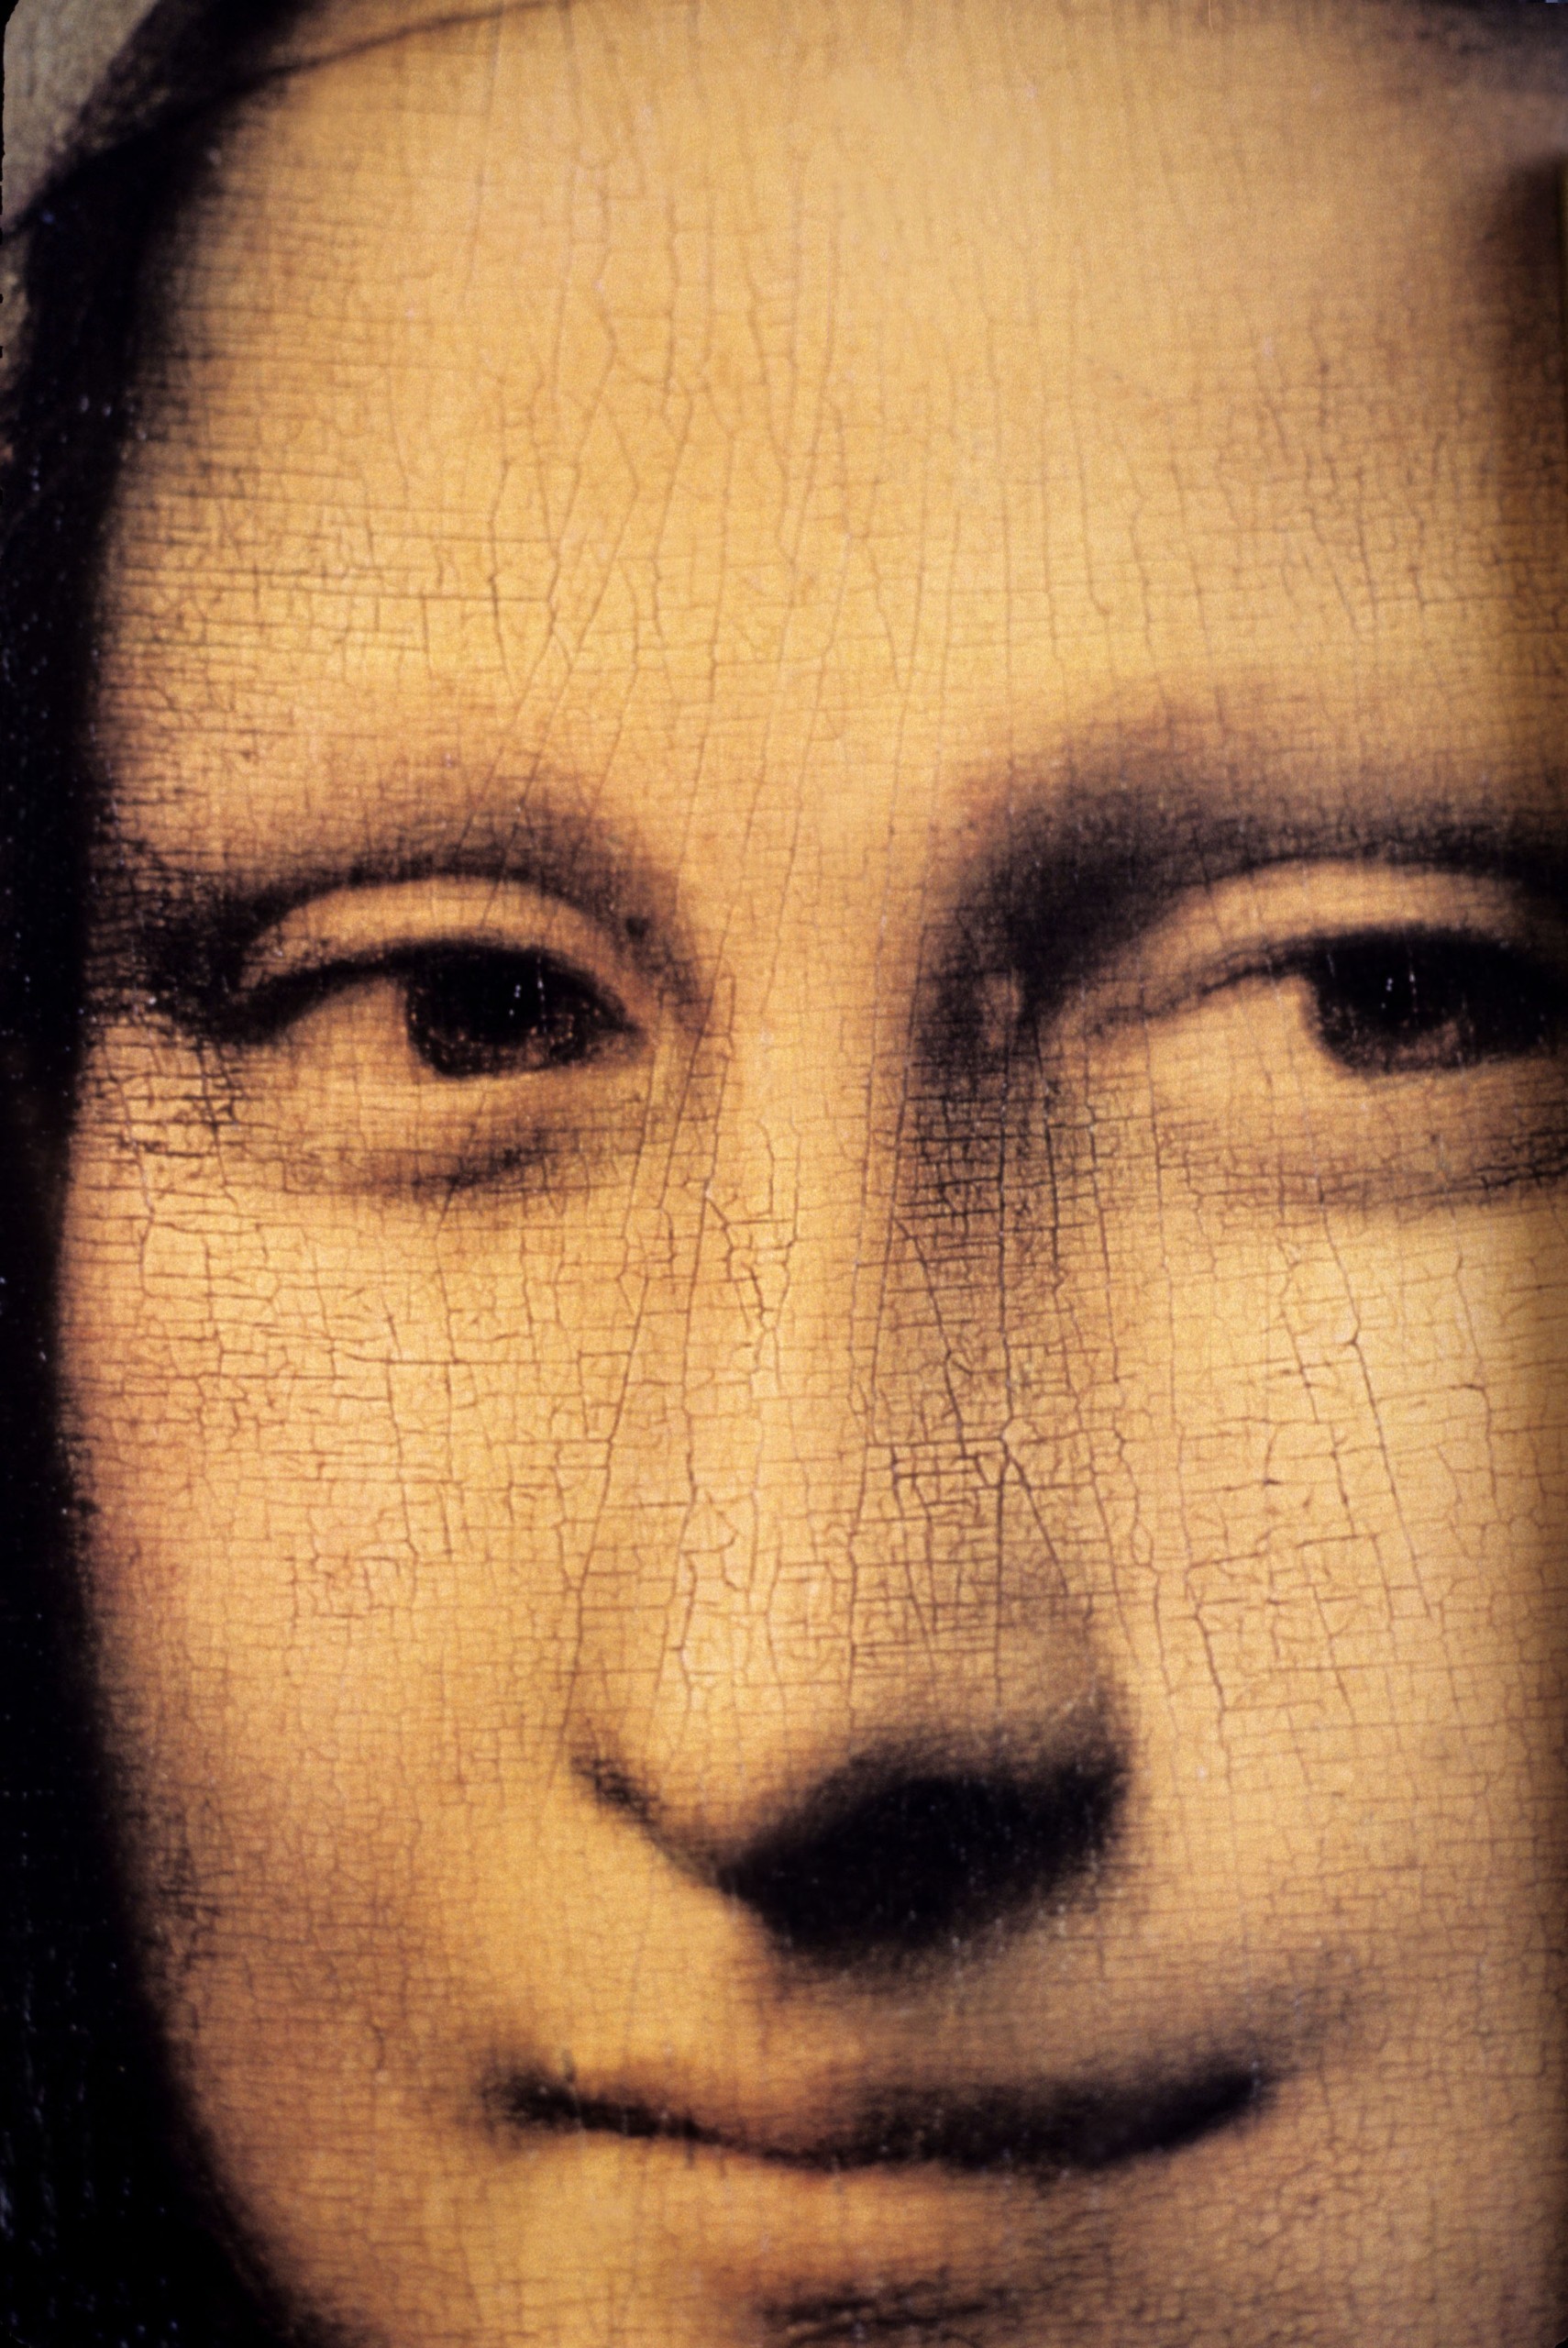 Νέα ανακάλυψη στον πίνακα της Μόνα Λίζα – Πόσα μυστικά κρύβει ακόμα το αριστούργημα του Ντα Βίντσι;